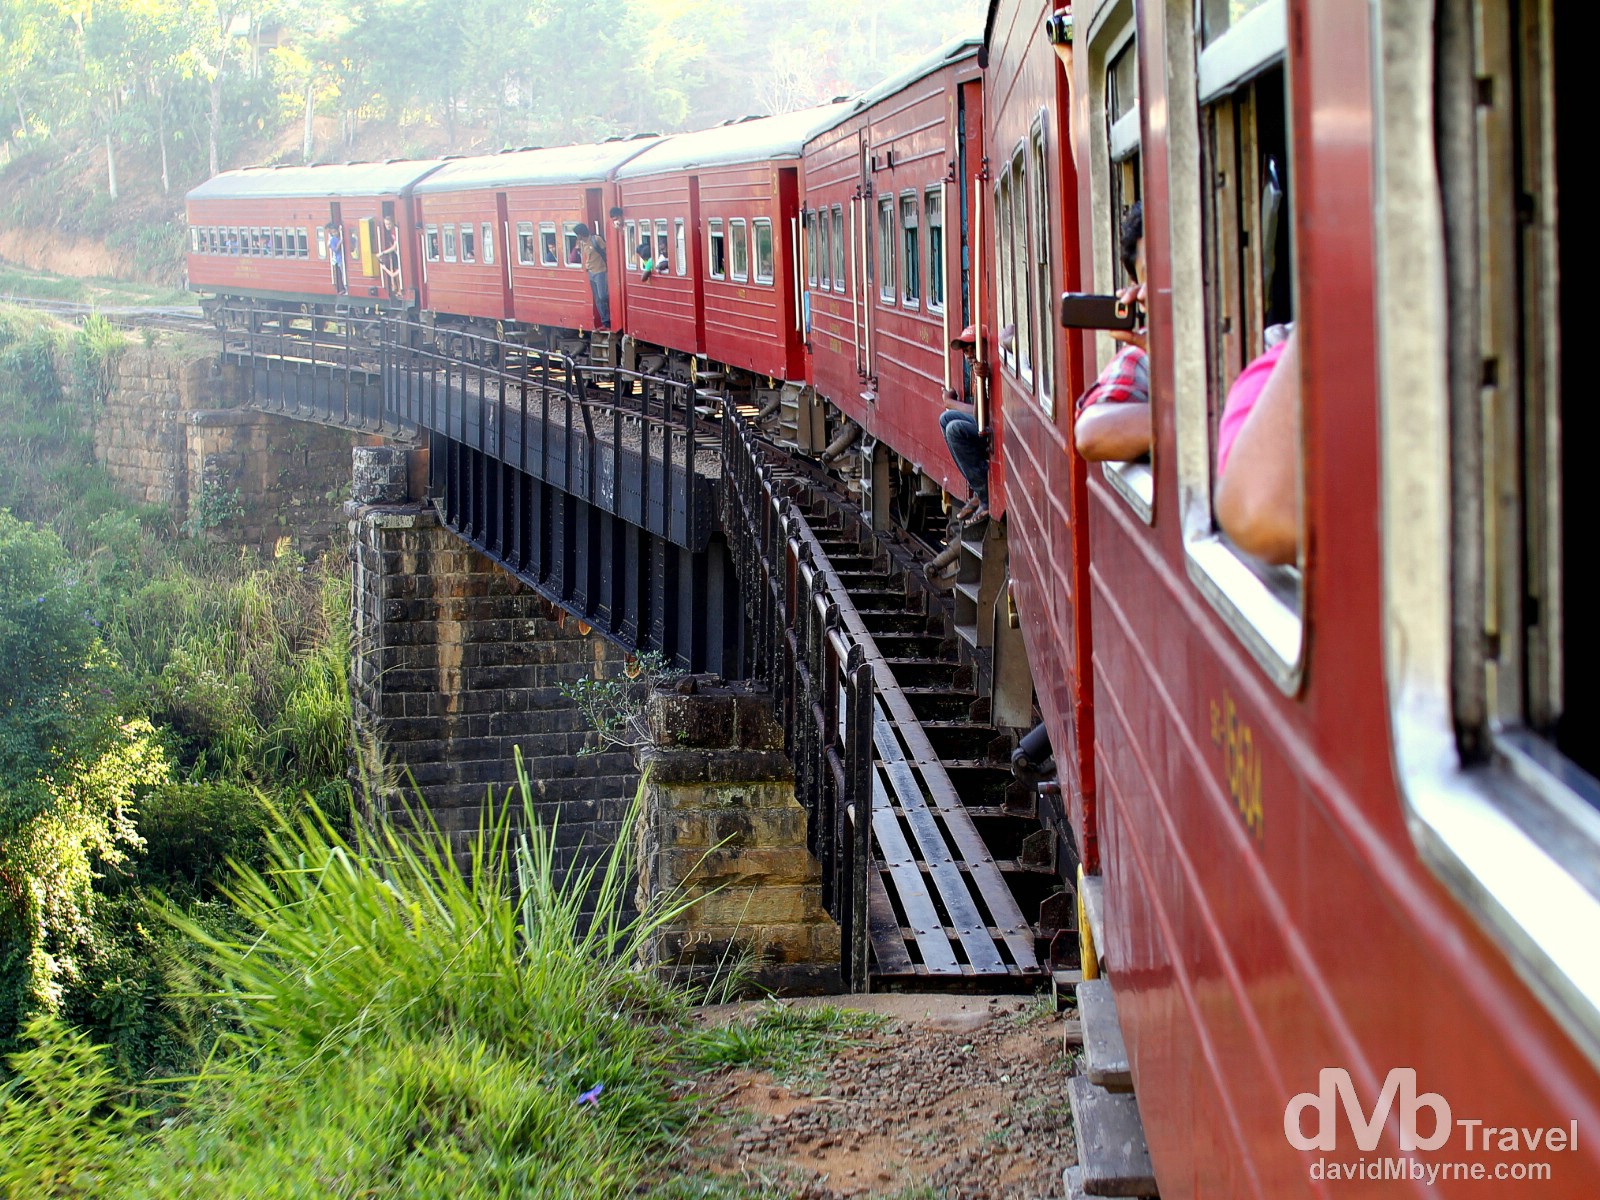 The Badulla to Colombo train in central Sri Lanka. - Worldwide